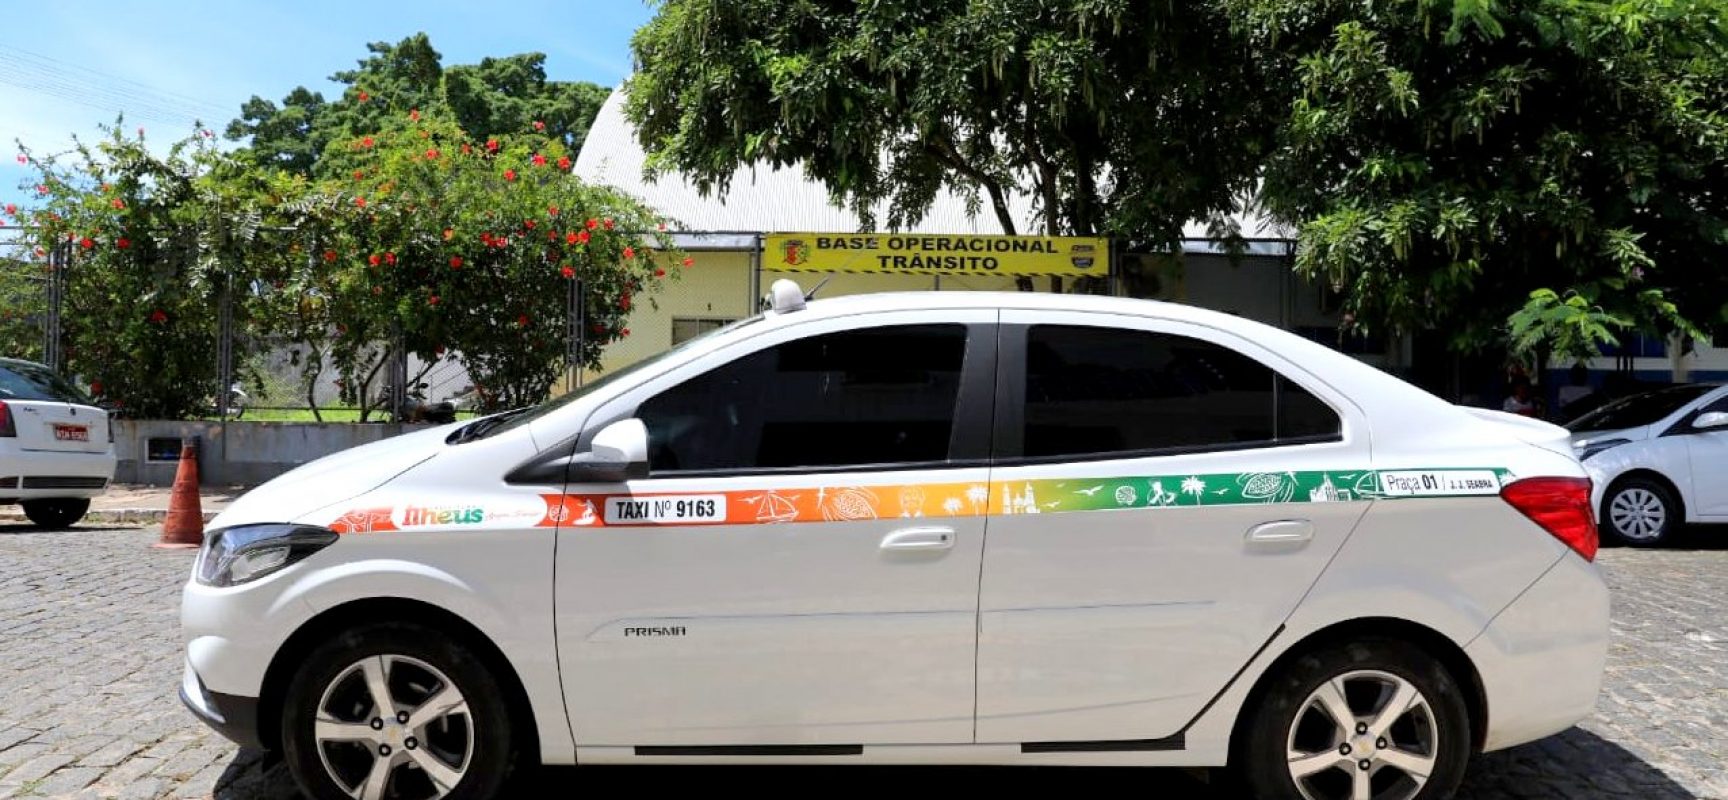 Desenbahia aumenta limite de crédito para taxistas